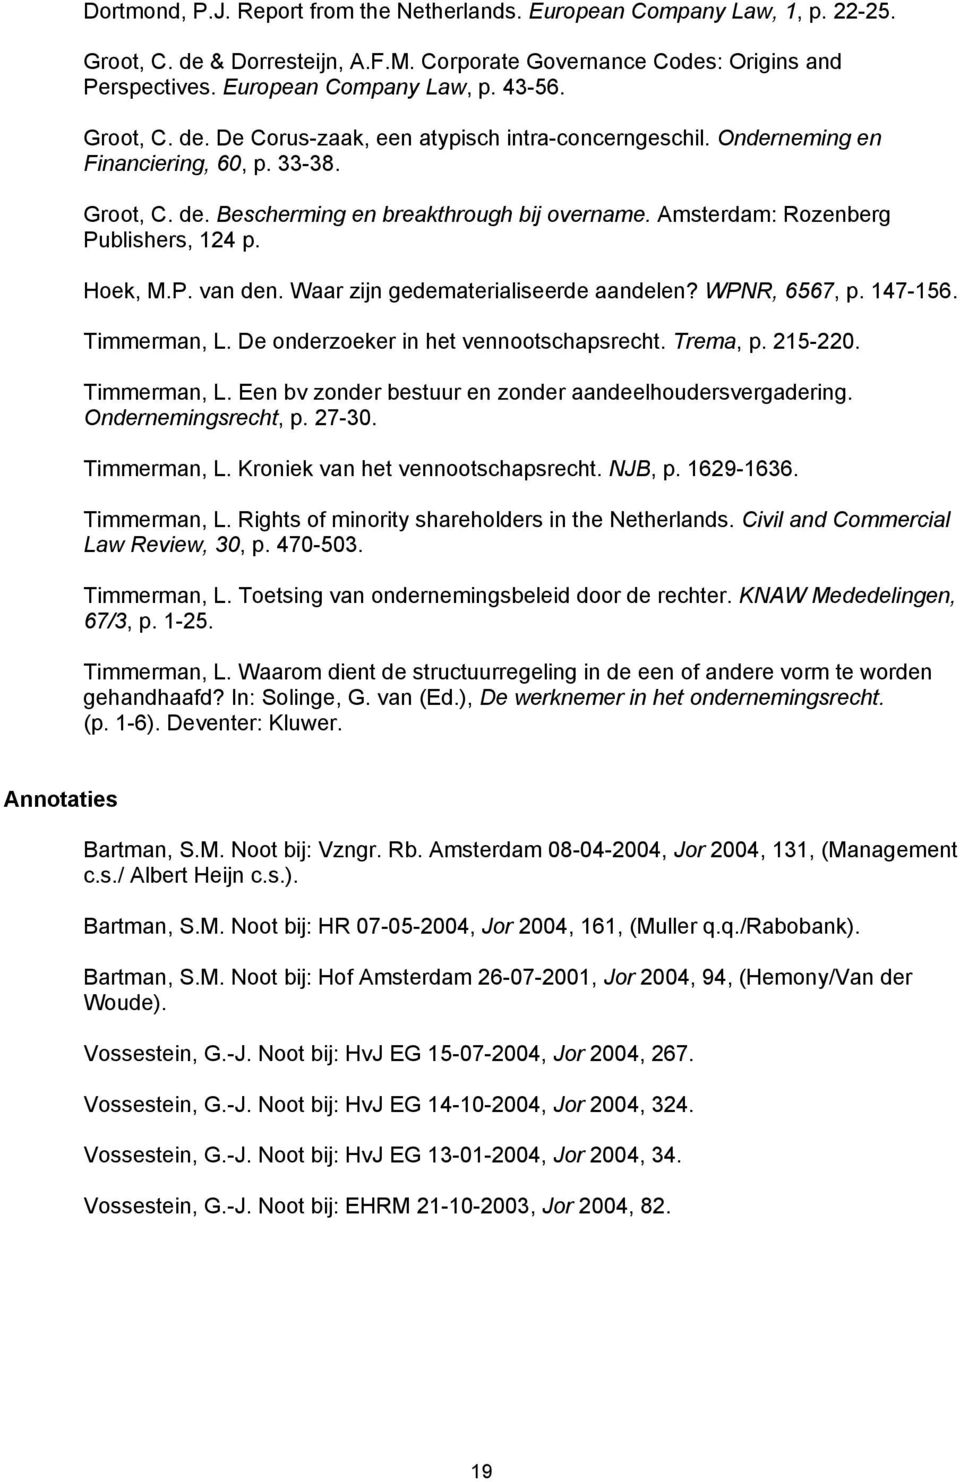 Amsterdam: Rozenberg Publishers, 124 p. Hoek, M.P. van den. Waar zijn gedematerialiseerde aandelen? WPNR, 6567, p. 147-156. Timmerman, L. De onderzoeker in het vennootschapsrecht. Trema, p. 215-220.